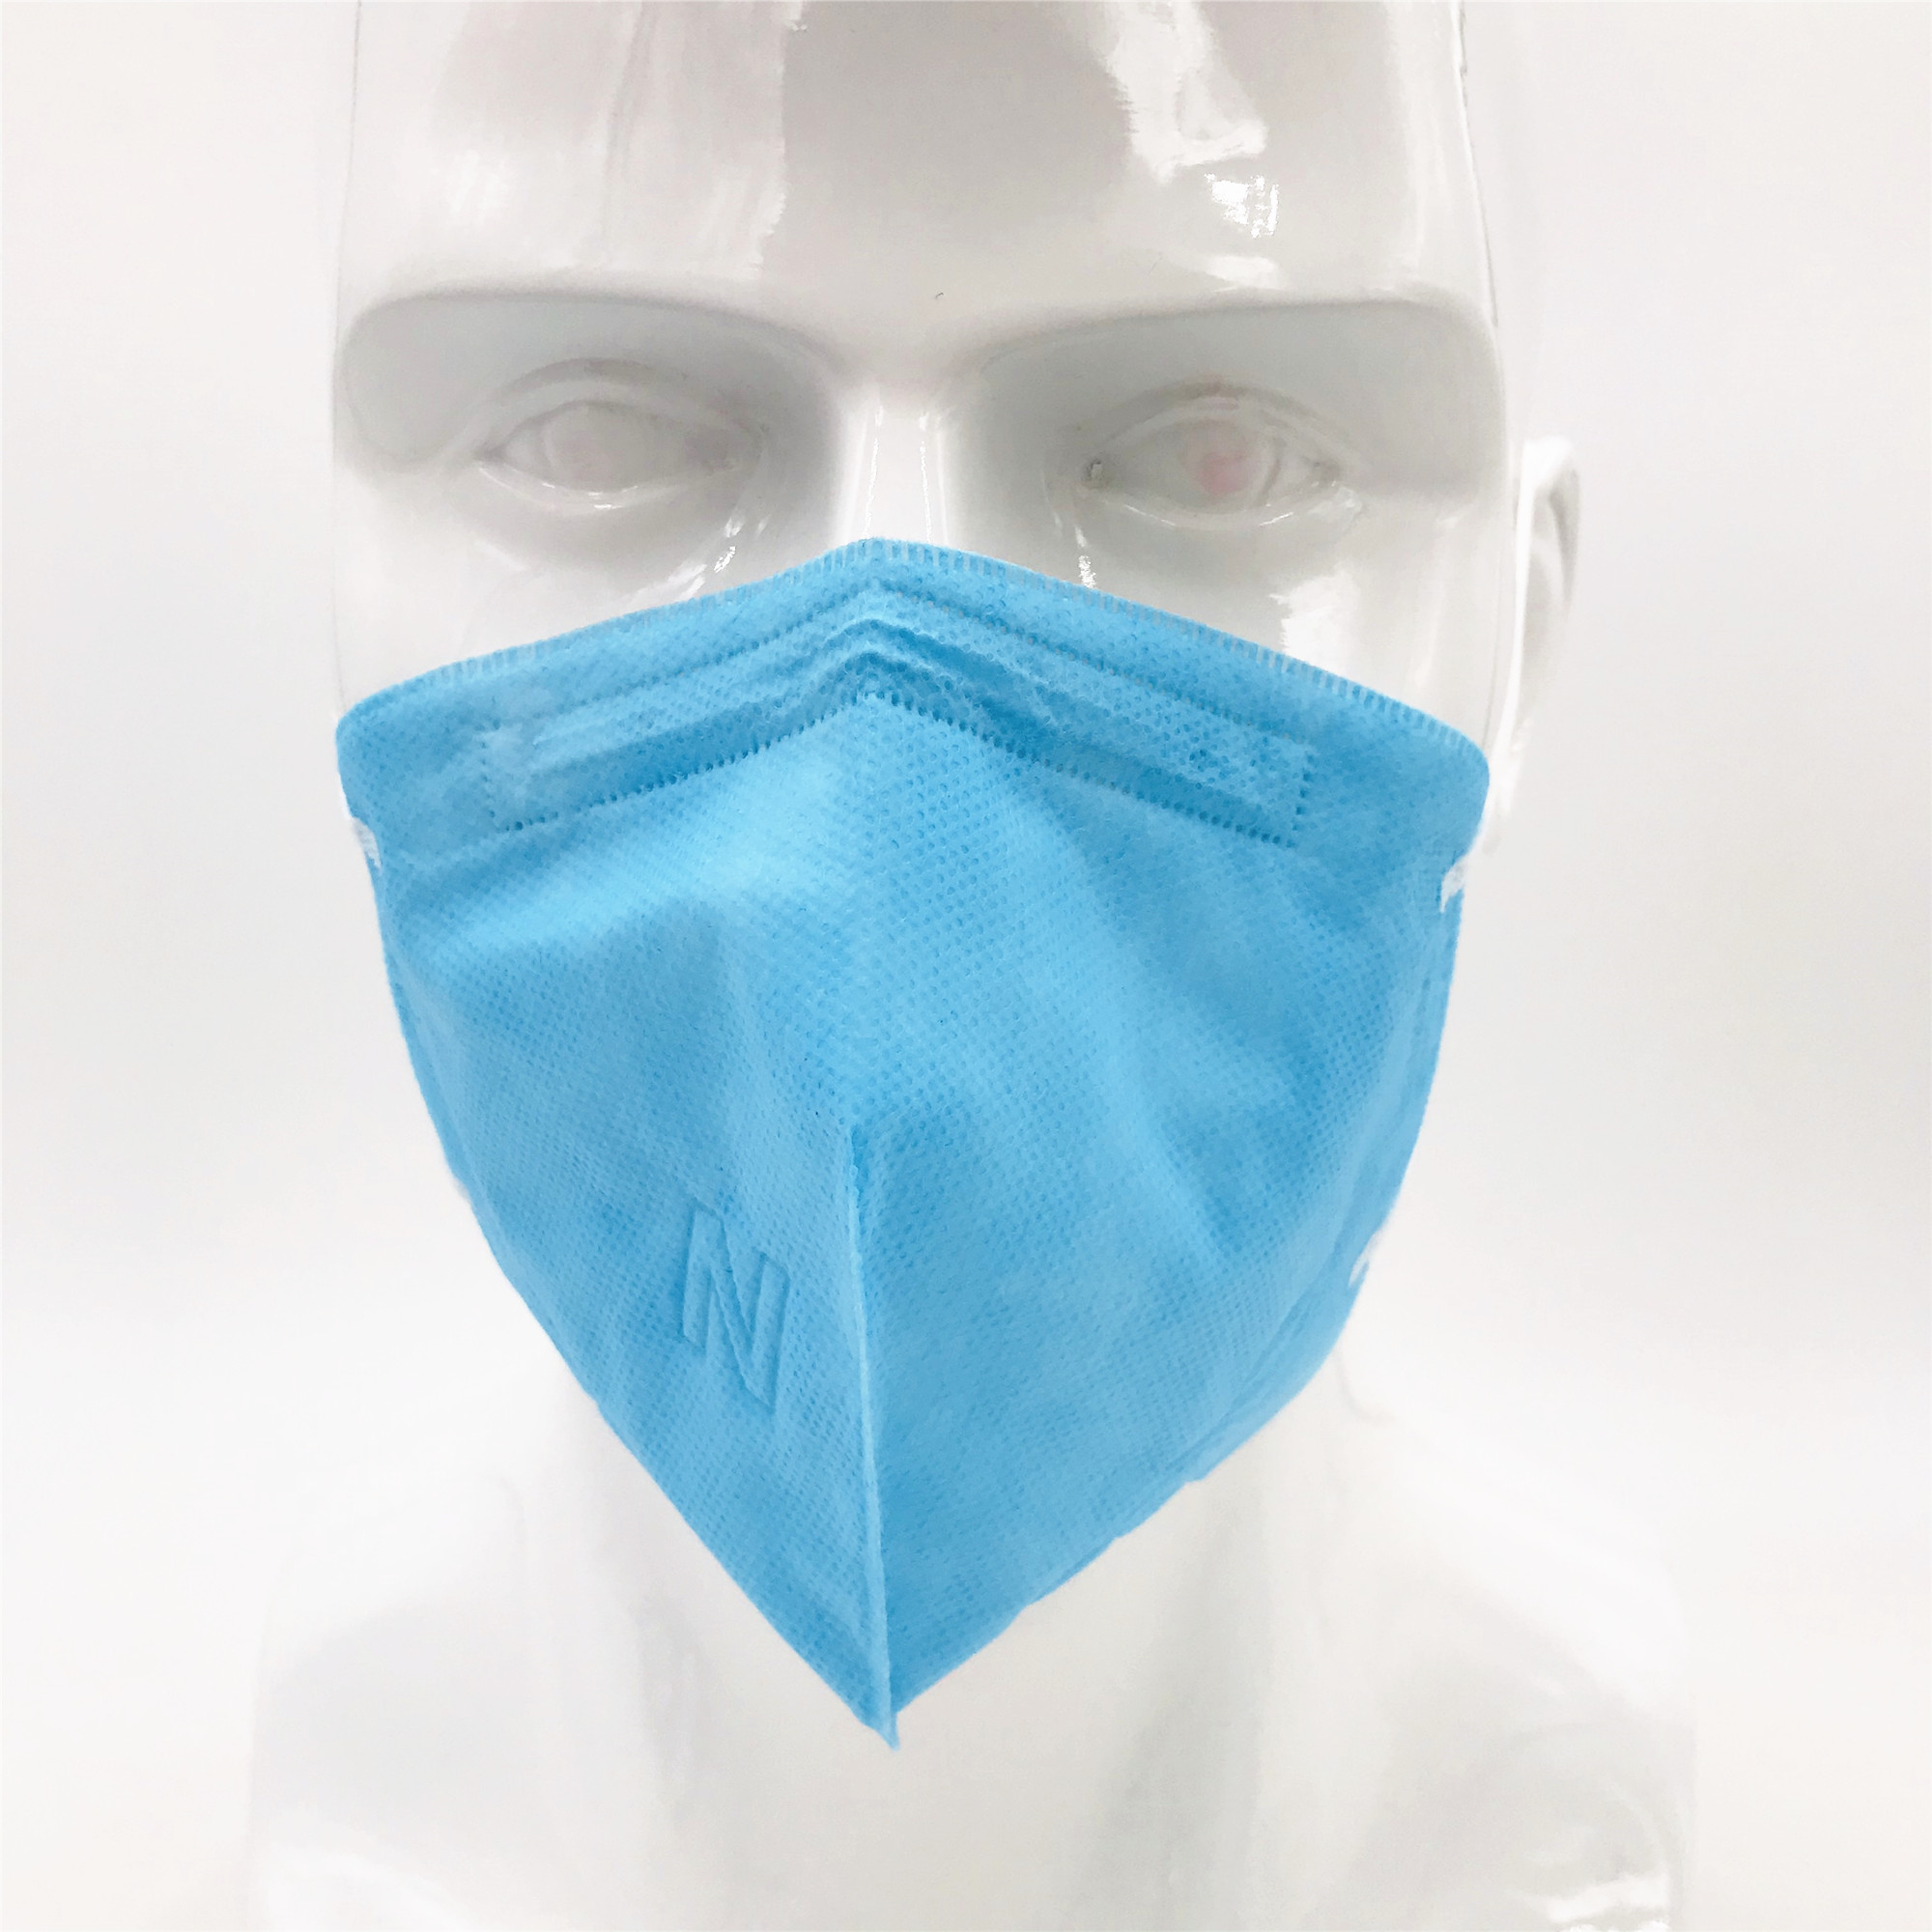 4 slojna maska ​​za zaštitu od prašine koja se ispire iz rastopine